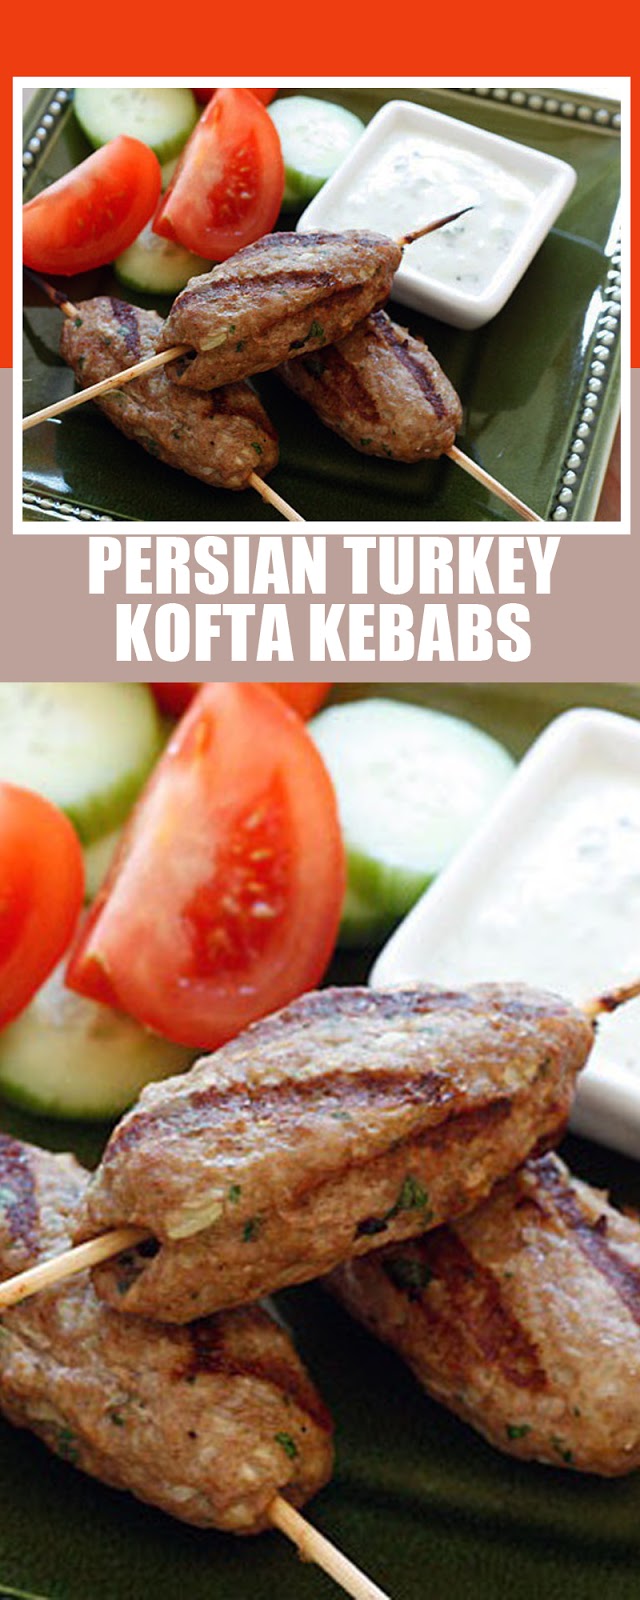 PERSIAN TURKEY KOFTA KEBABS | Raisa Mom's Kitchen